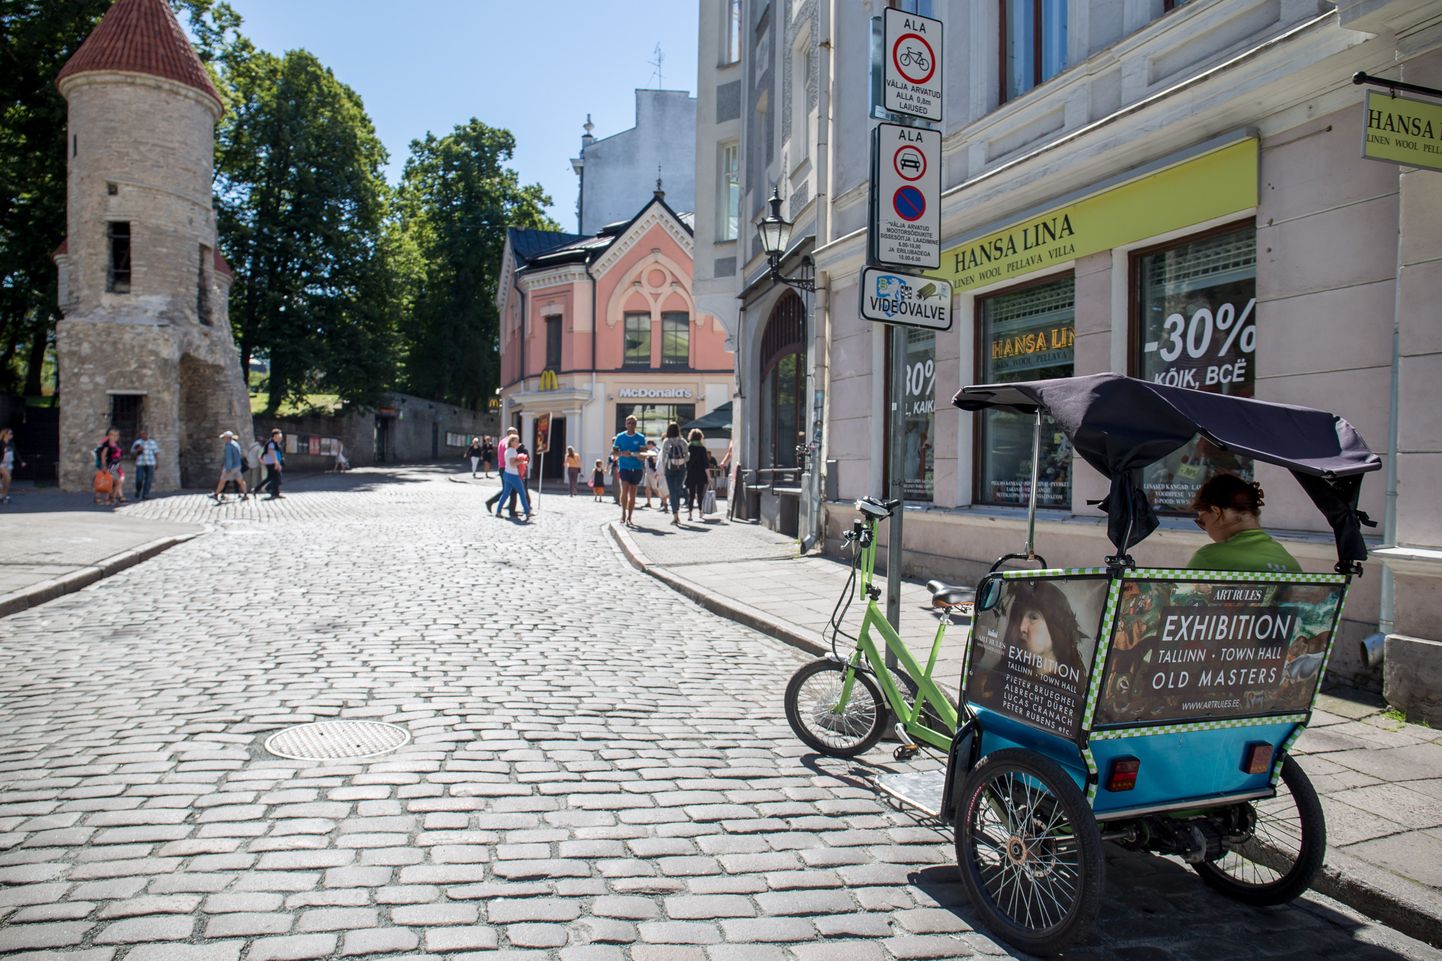 Tänasest on velotaksod Tallinna vanalinnas keelatud. Velotakso Vana-Viru tänaval.Klienti ootava taksojuhi sõnul seisab ta täpselt lubatud ala piiril.